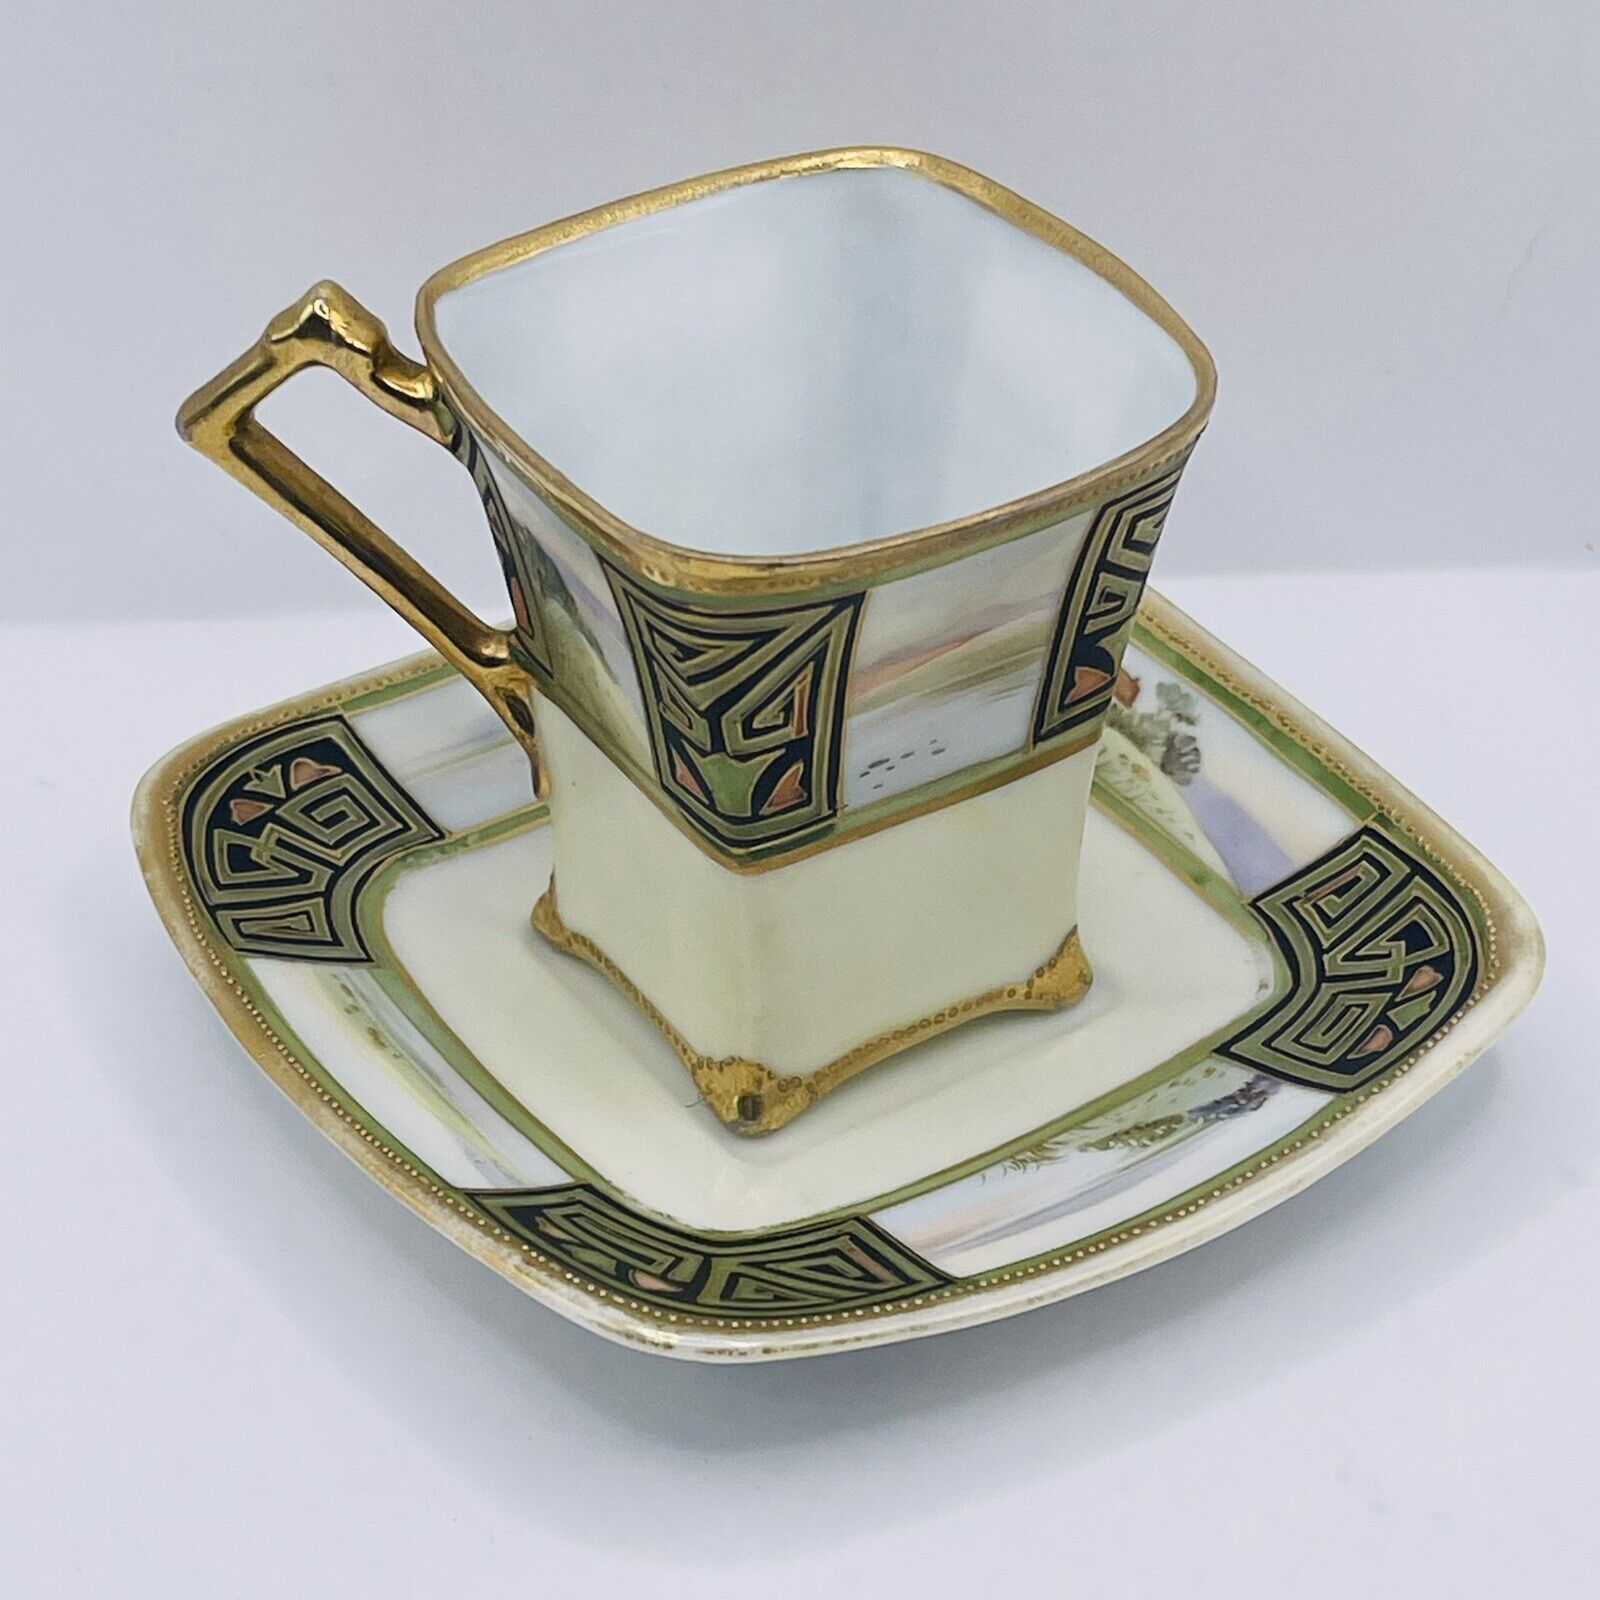 Vintage Demitasse Espresso Teacup & Saucer Countryside Art Deco Gold Trim Japan